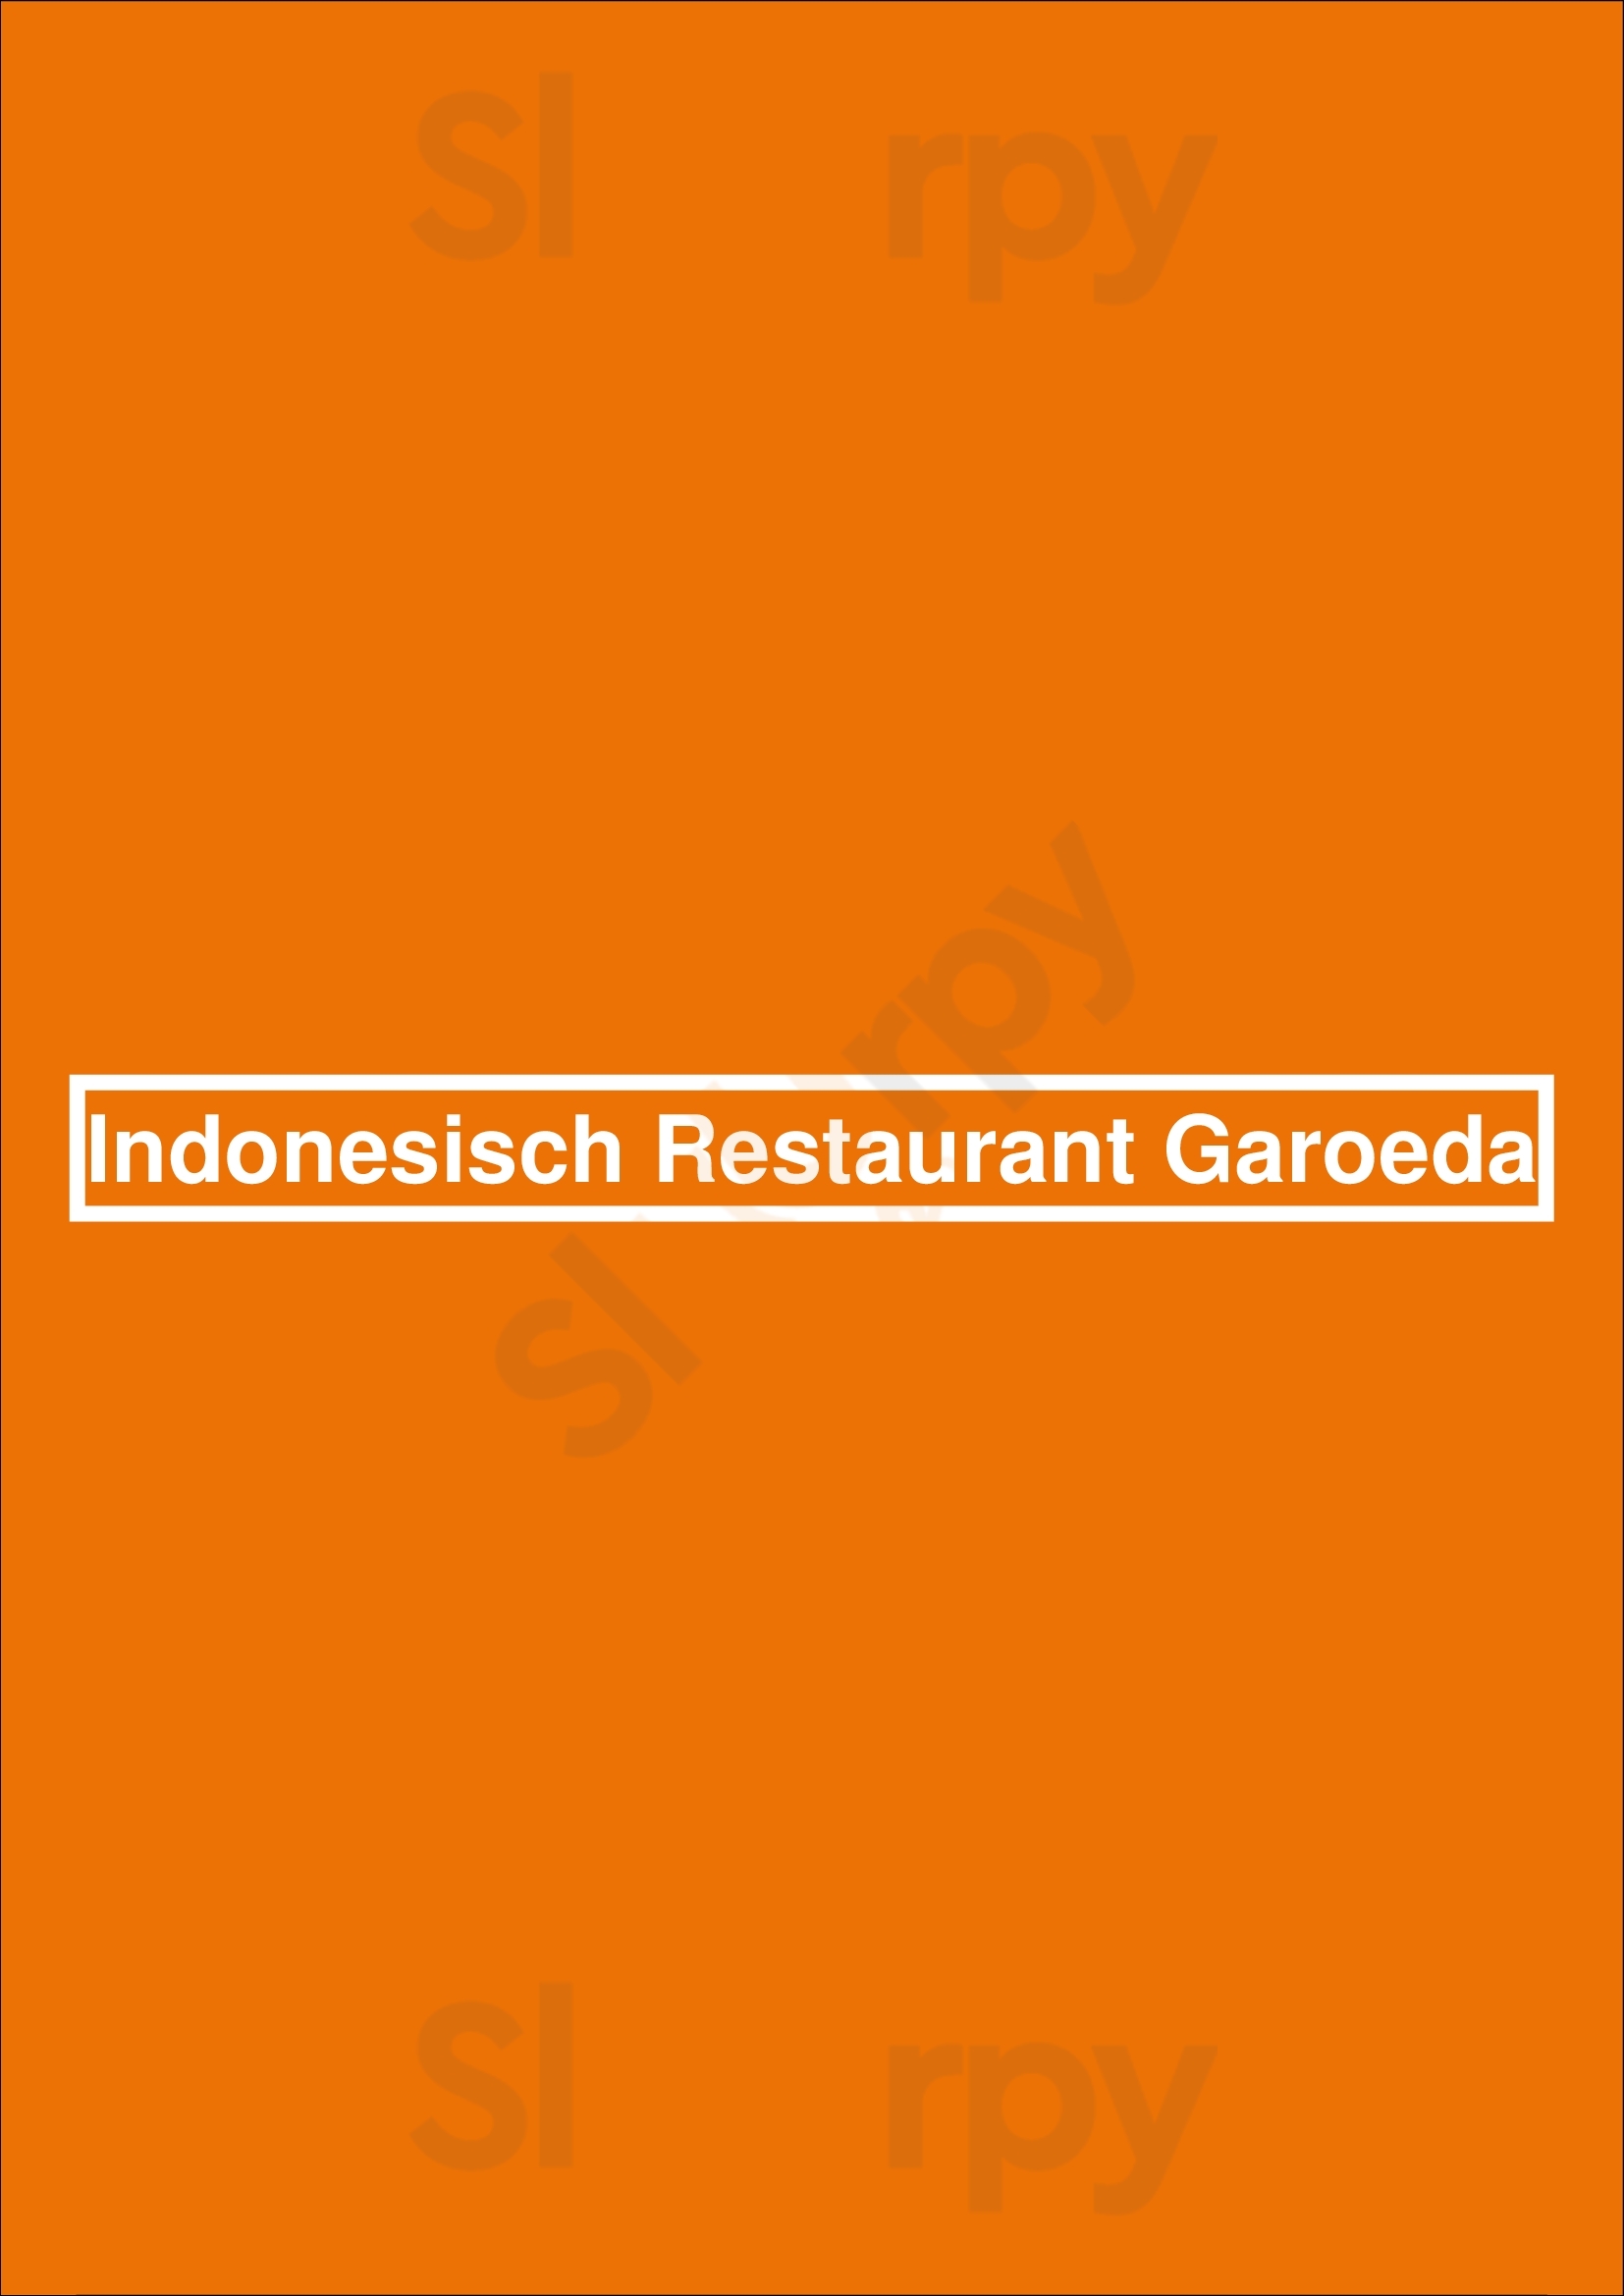 Indonesisch Restaurant Garoeda Den Haag Menu - 1